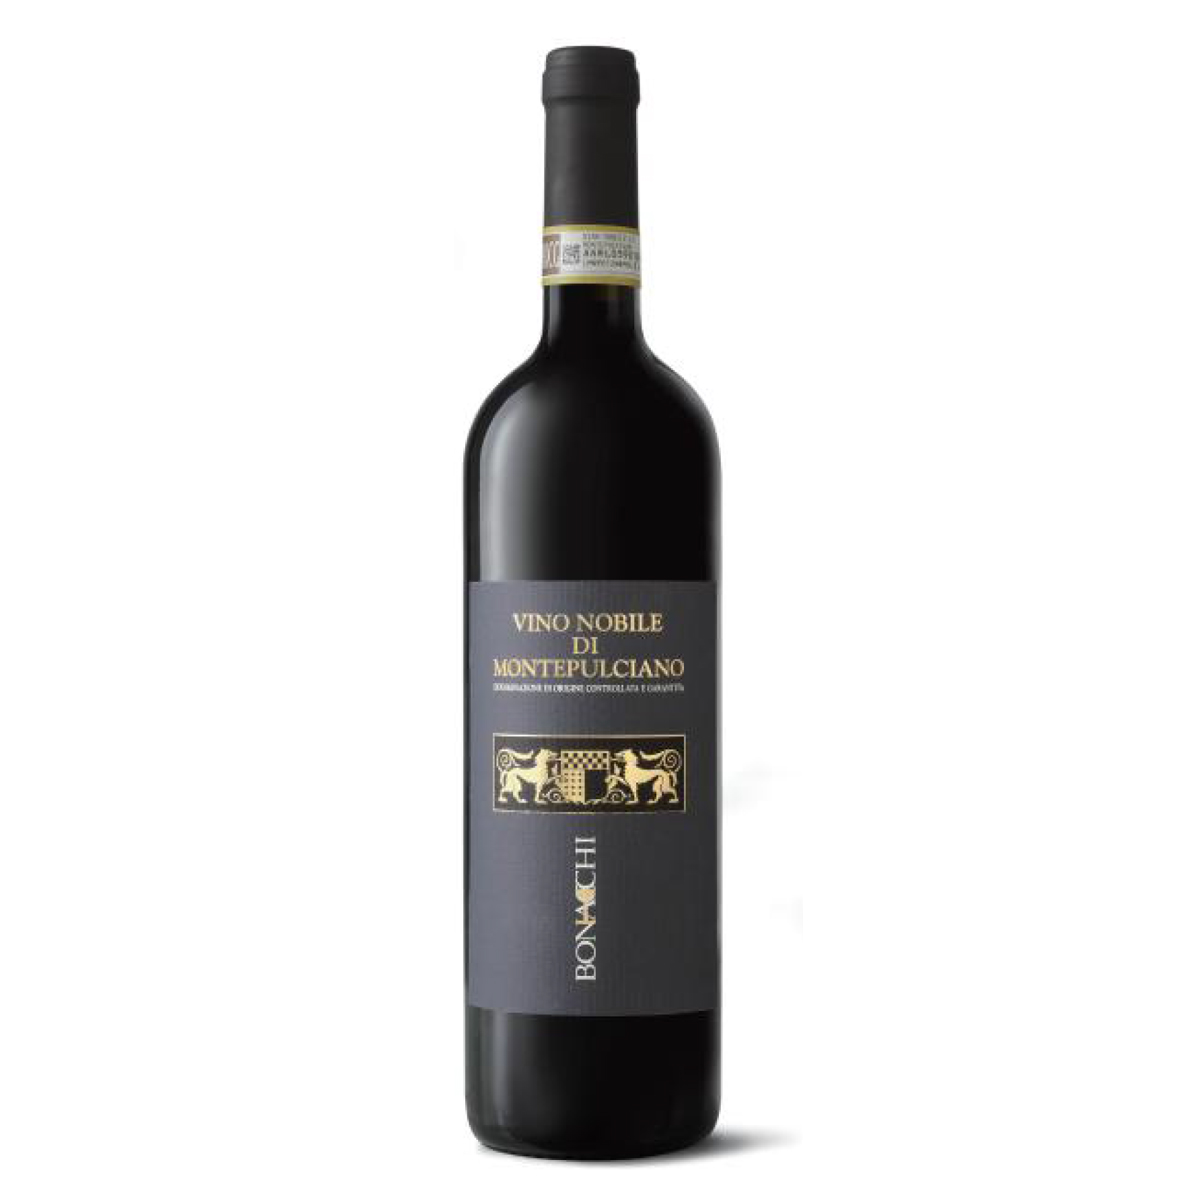 意大利蒙特普恰諾·諾比萊干紅葡萄酒紅酒